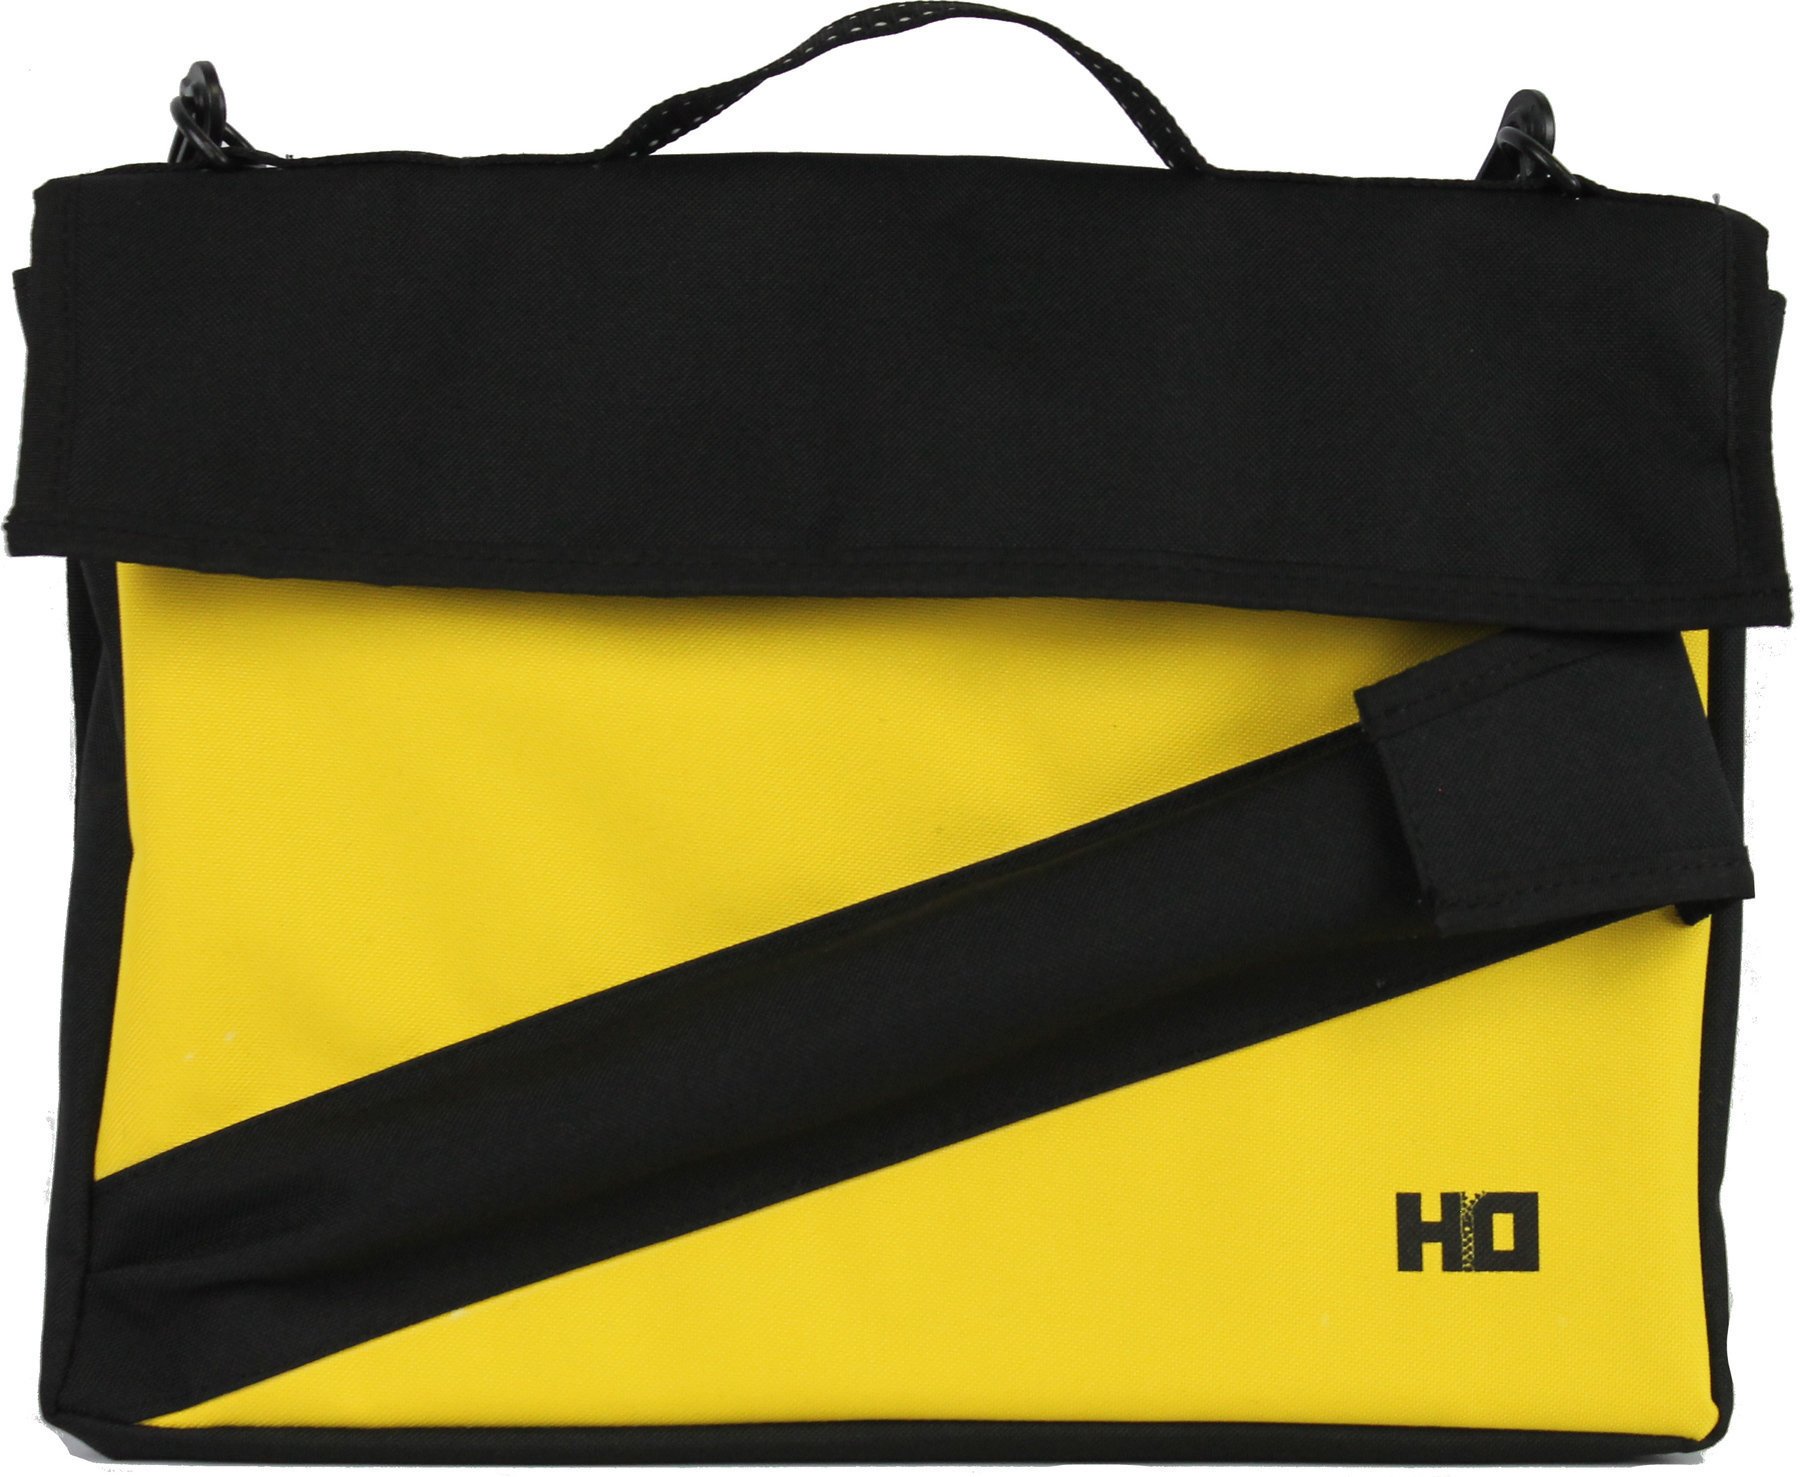 Messenger Bag Hudební Obaly H-O Flautino Yellow/Black